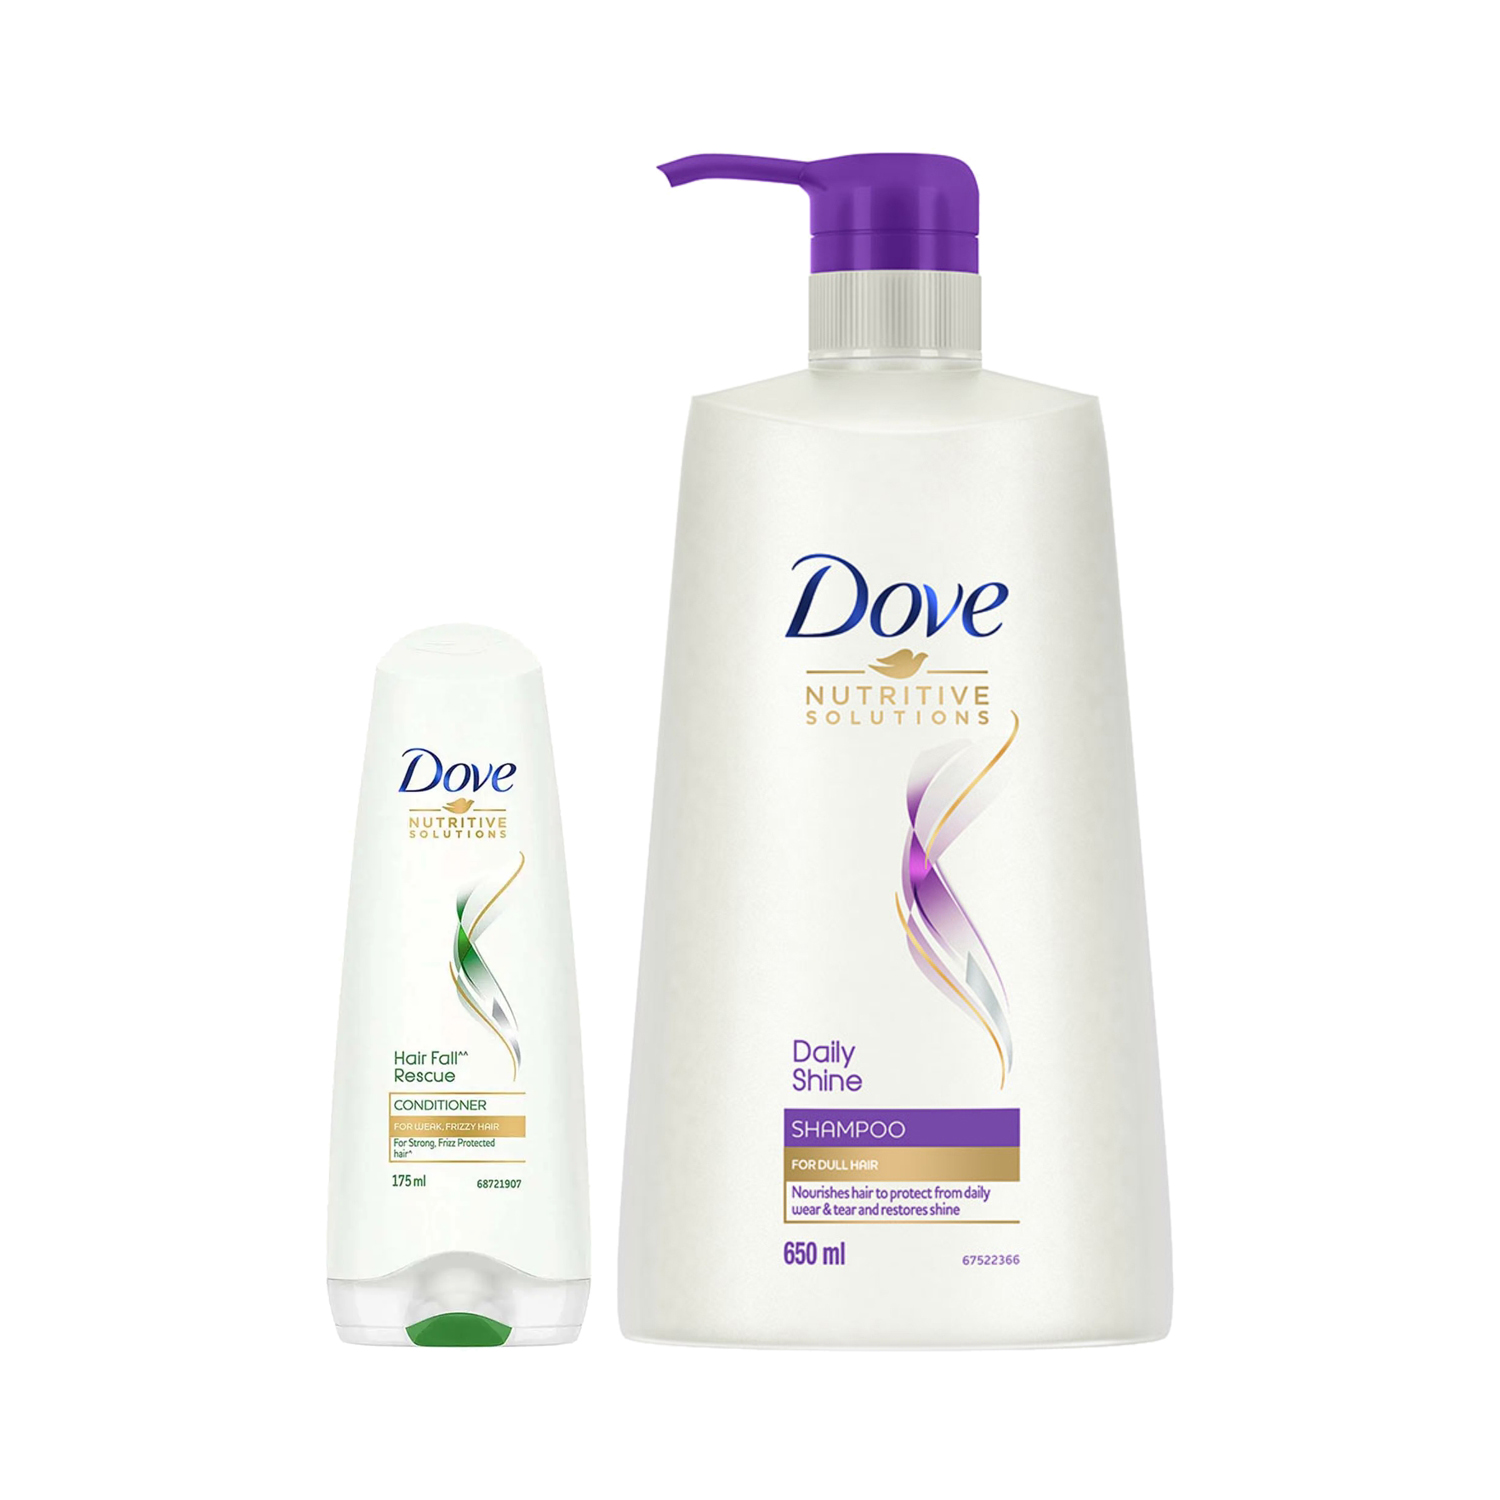 Dove | Dove Daily Shine Shampoo (650 ml) + Hair Fall Rescue Conditioner (175 ml) Combo